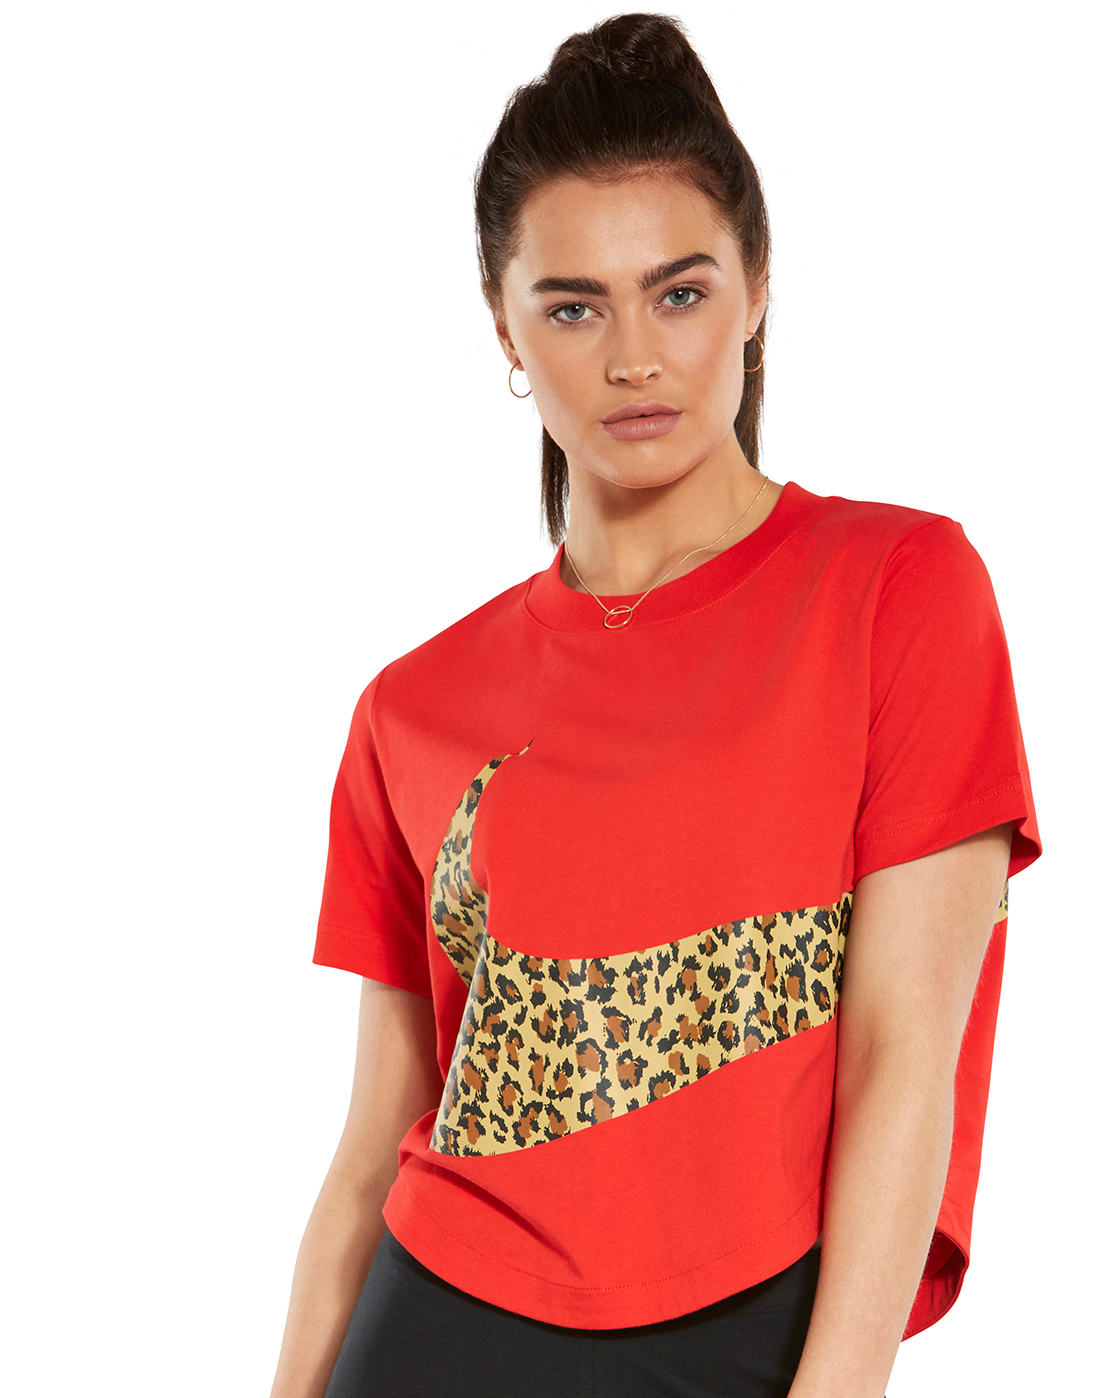 nike red leopard sweatshirt